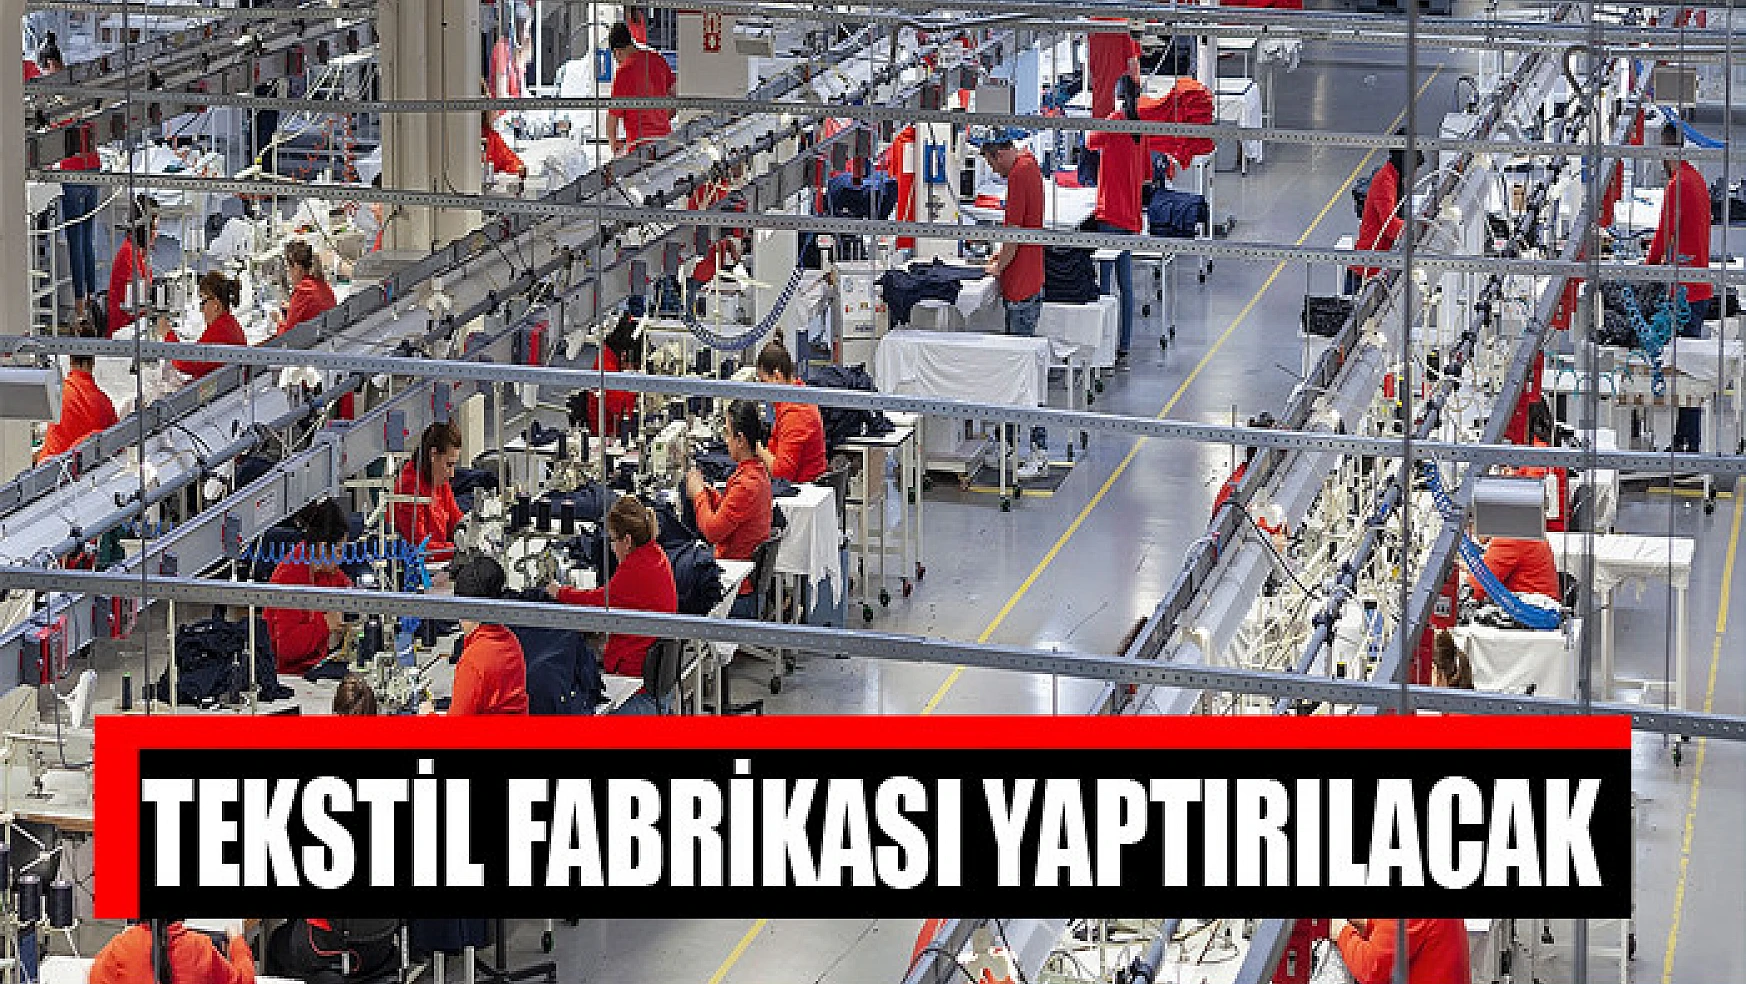 Tekstil fabrikası yaptırılacak